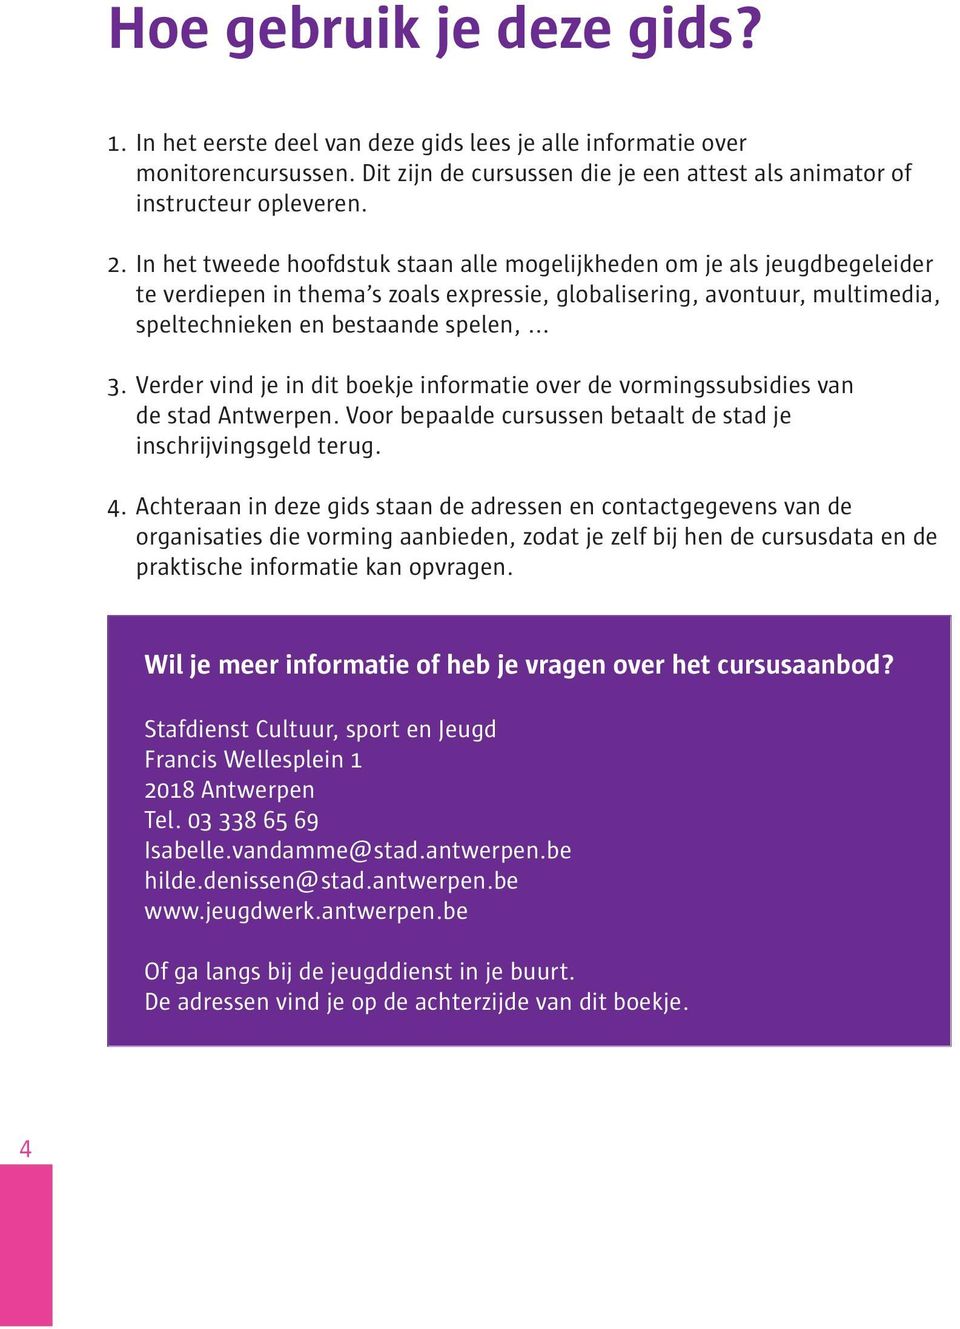 Verder vind je in dit boekje informatie over de vormingssubsidies van de stad Antwerpen. Voor bepaalde cursussen betaalt de stad je inschrijvingsgeld terug. 4.